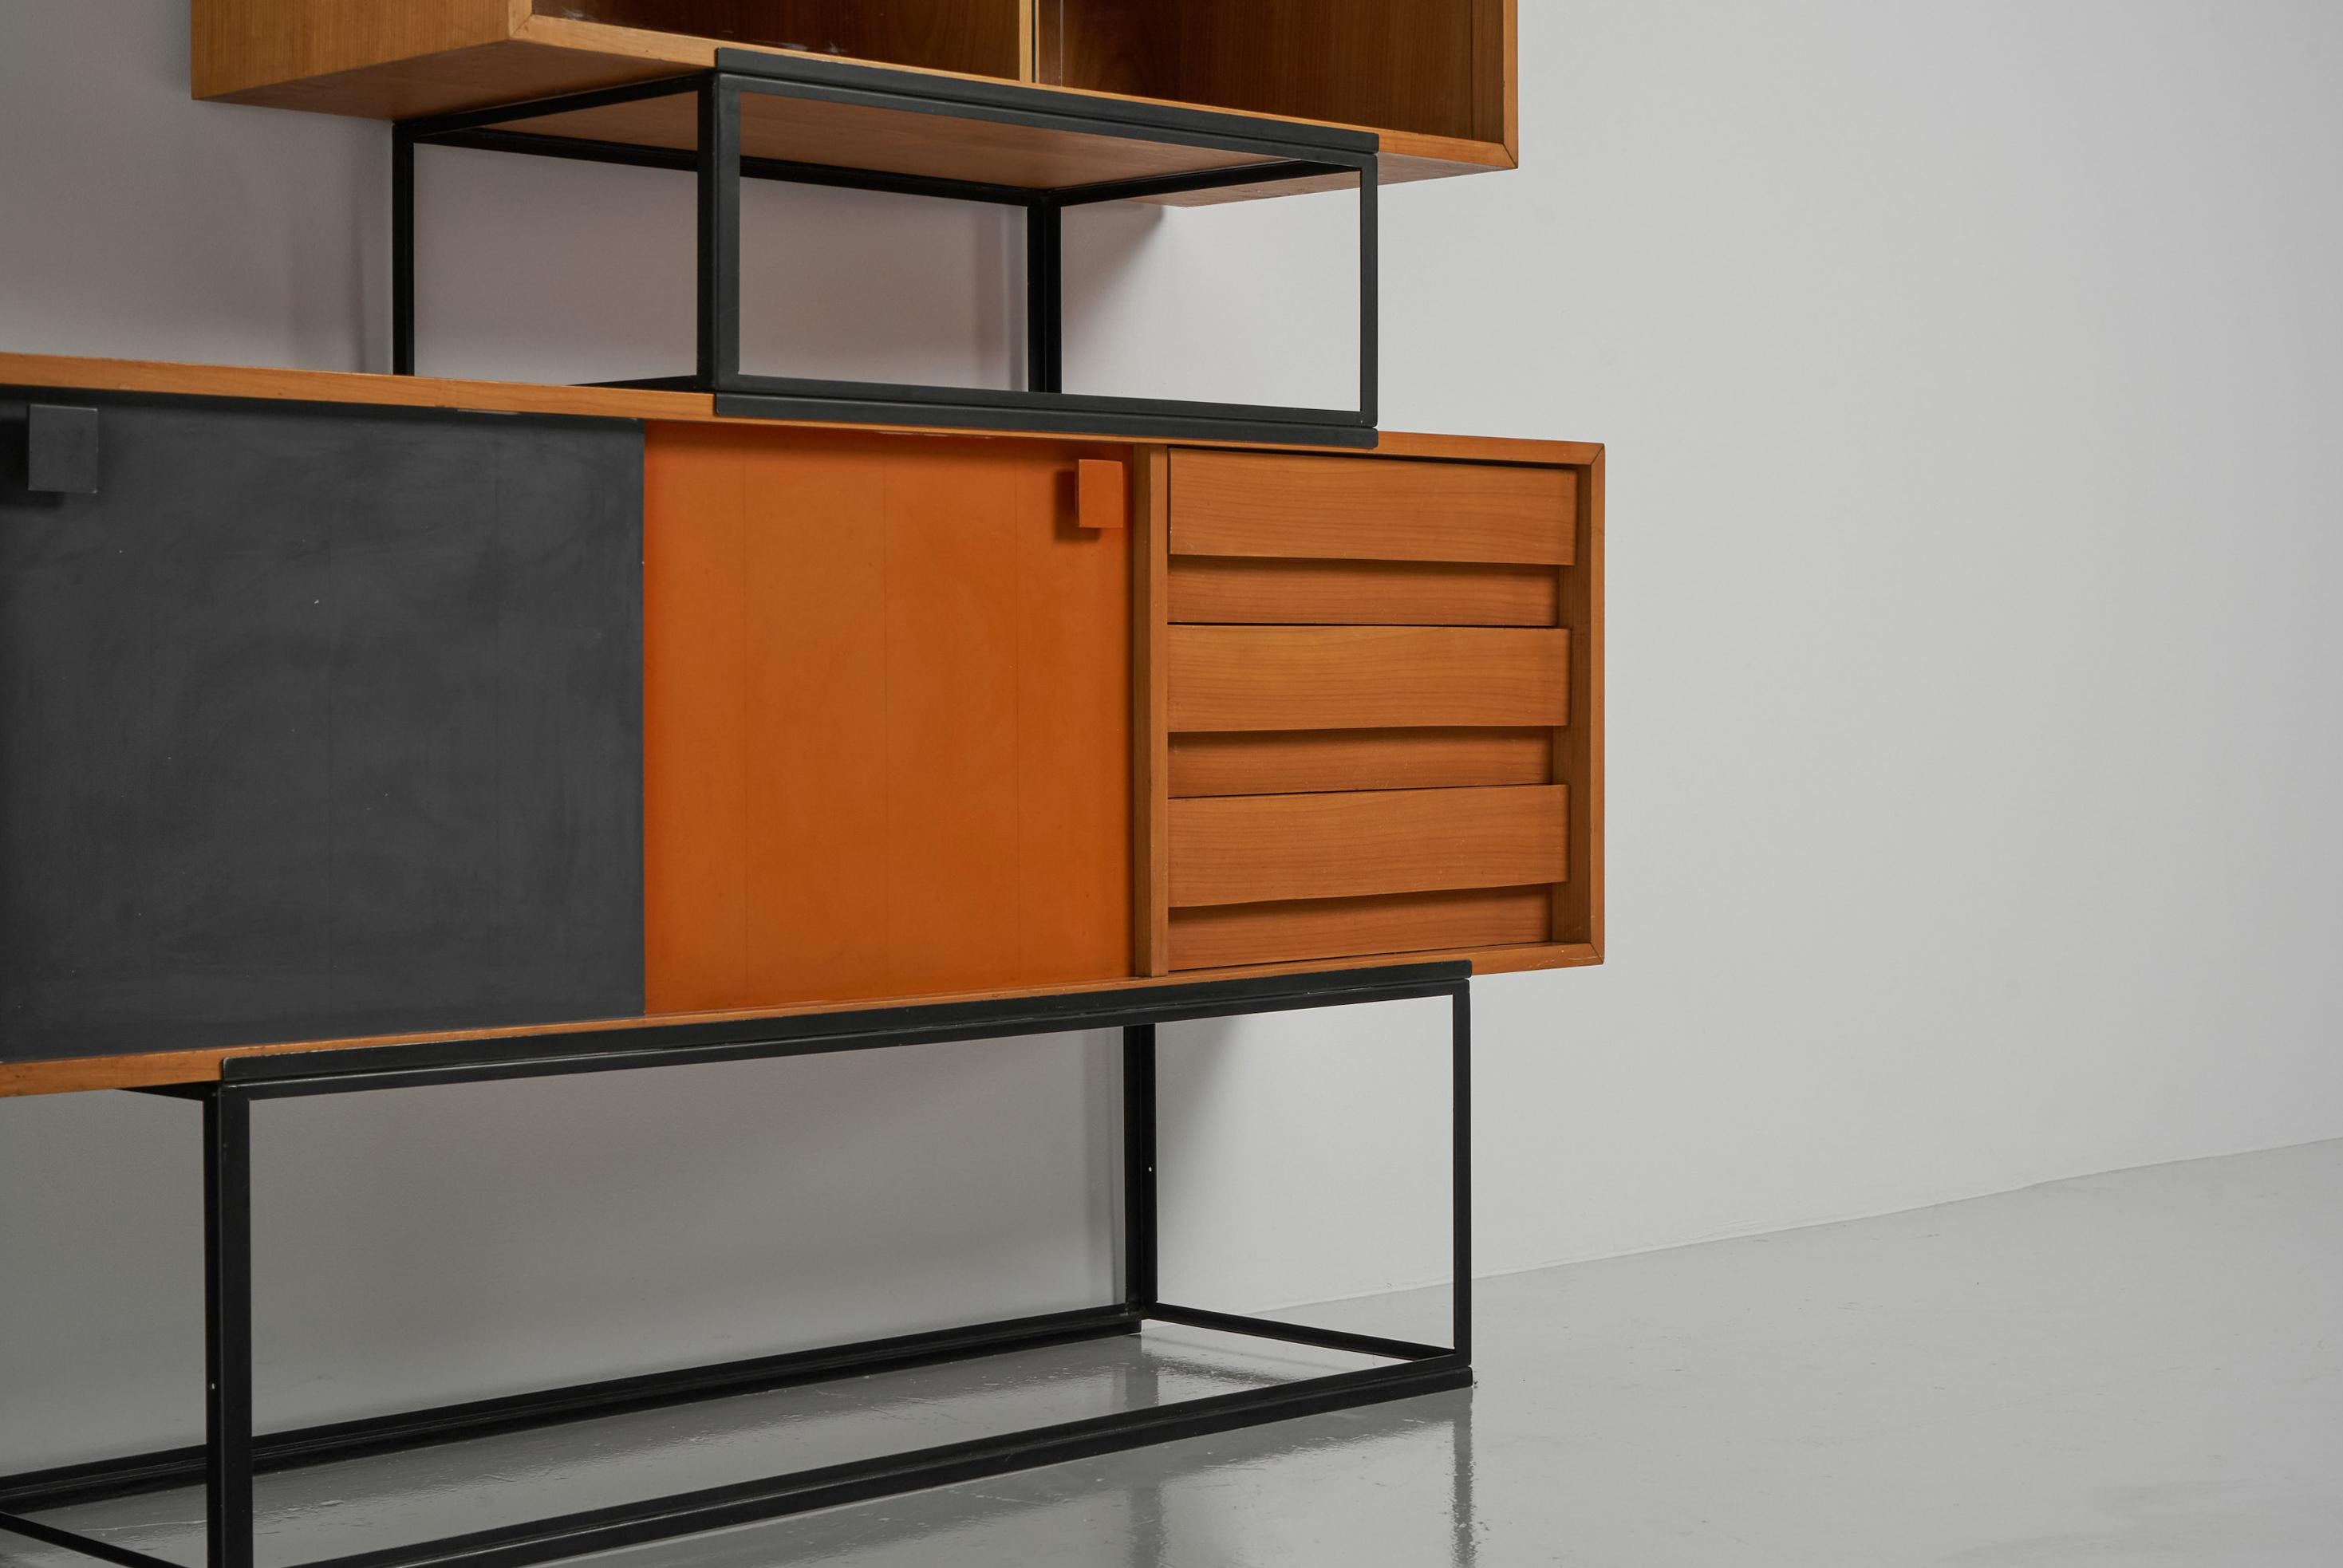 Rare ensemble de 2 armoires modulaires conçues par Bernard Marange et fabriquées par NF Meubles, France 1960. Ces armoires sont fabriquées dans la période florissante du minimalisme français. C'est là que de nombreux designers importants ont